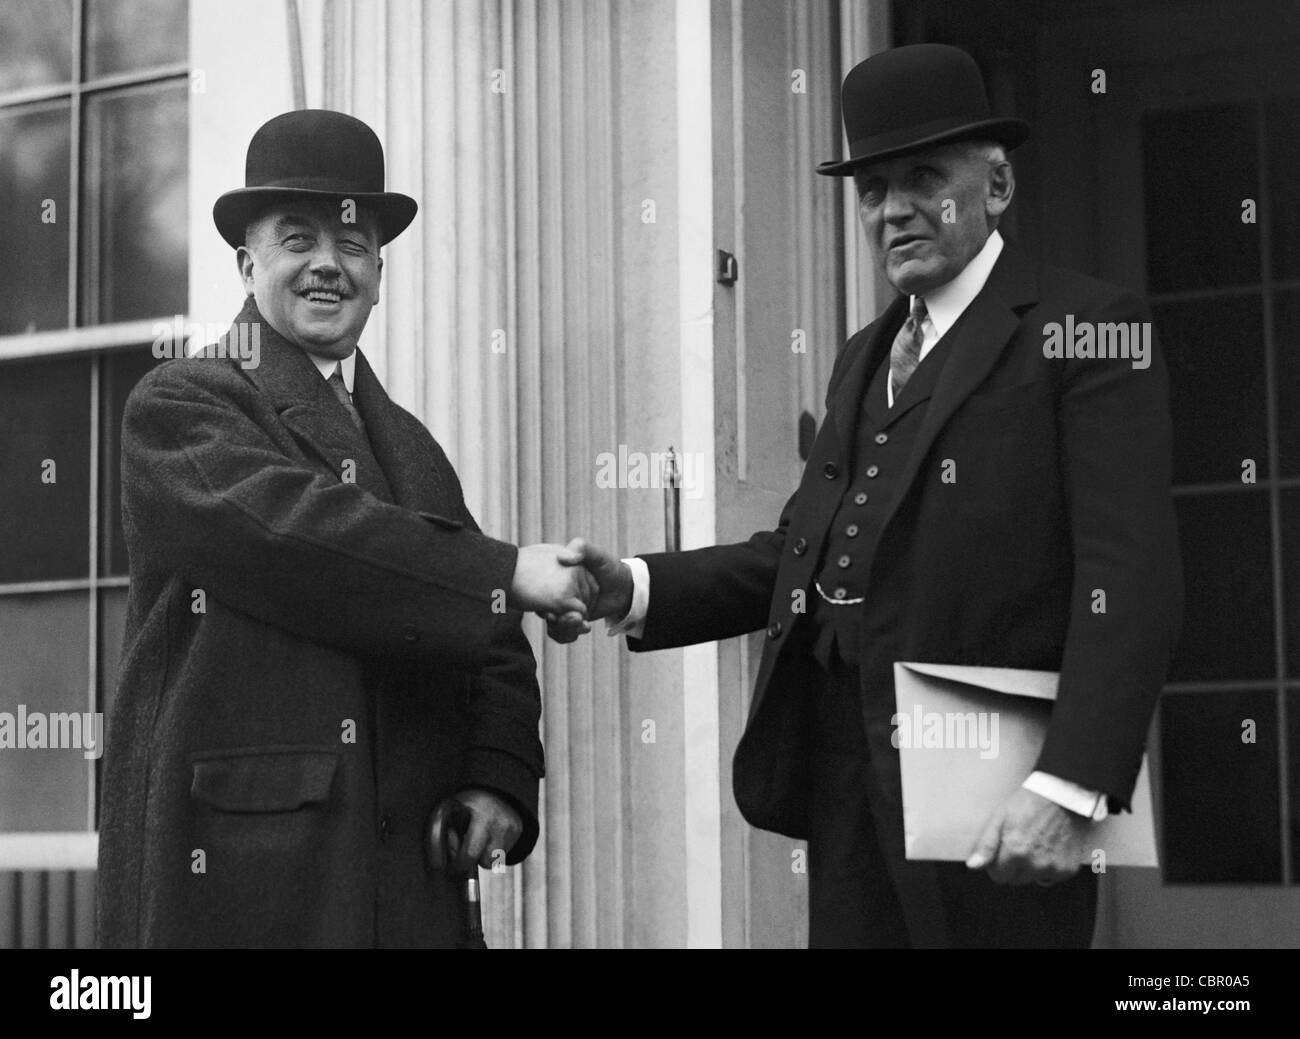 Del Partito laburista britannico del candidato Arthur Henderson (sinistra) stringe la mano con il Segretario di Stato americano Frank Billings Kellogg (a destra) durante un viaggio negli USA nel 1925. Foto Stock